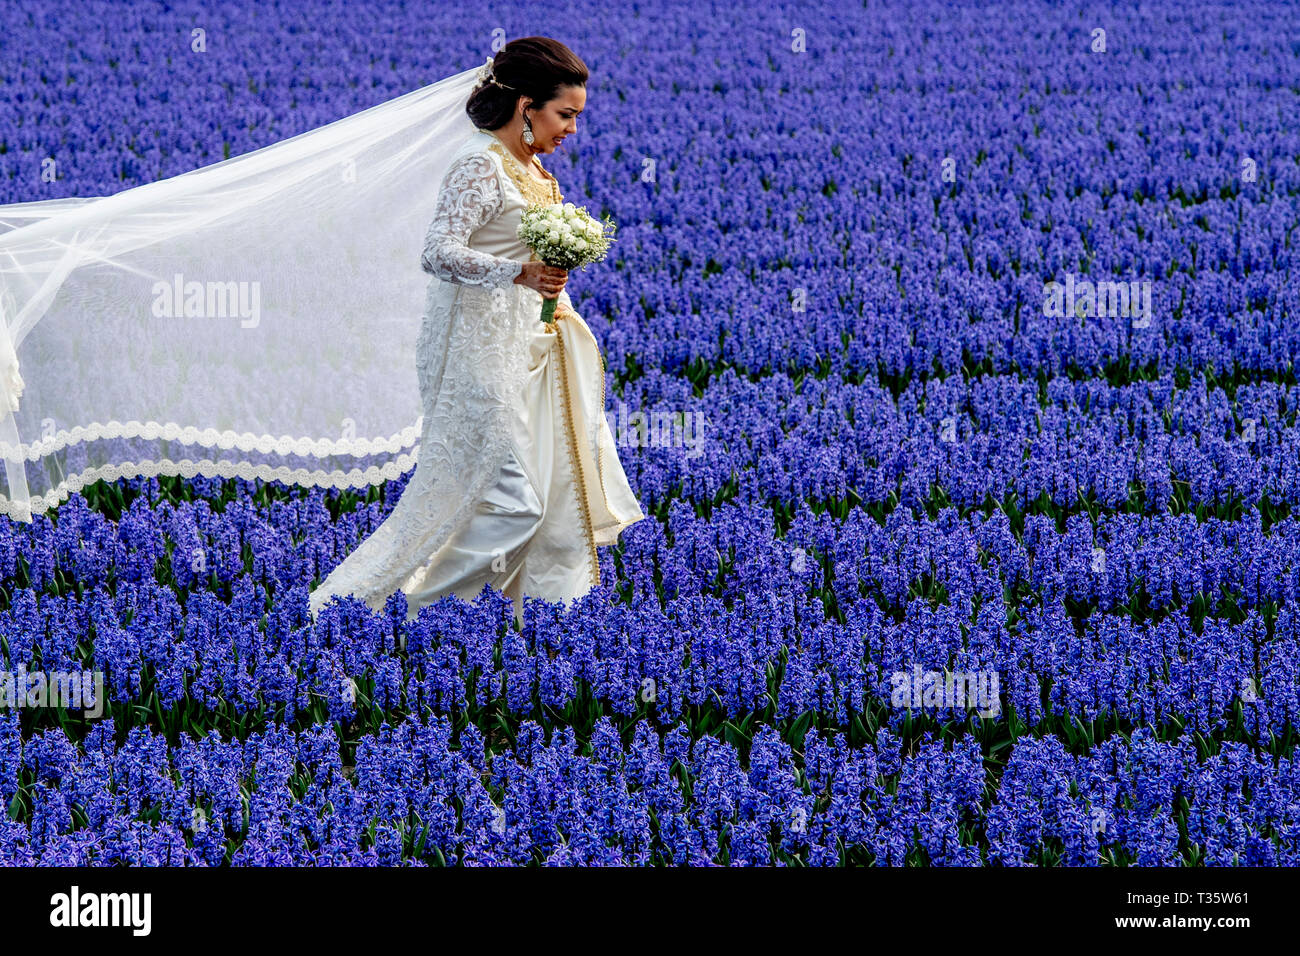 LISSE - een bruidspaar trouwen tulpenvelden staan in de bloei tulp tulpen , roos , rozen , bollenvelden staan in de bloei tijdens de bloembollen lente Foto Stock